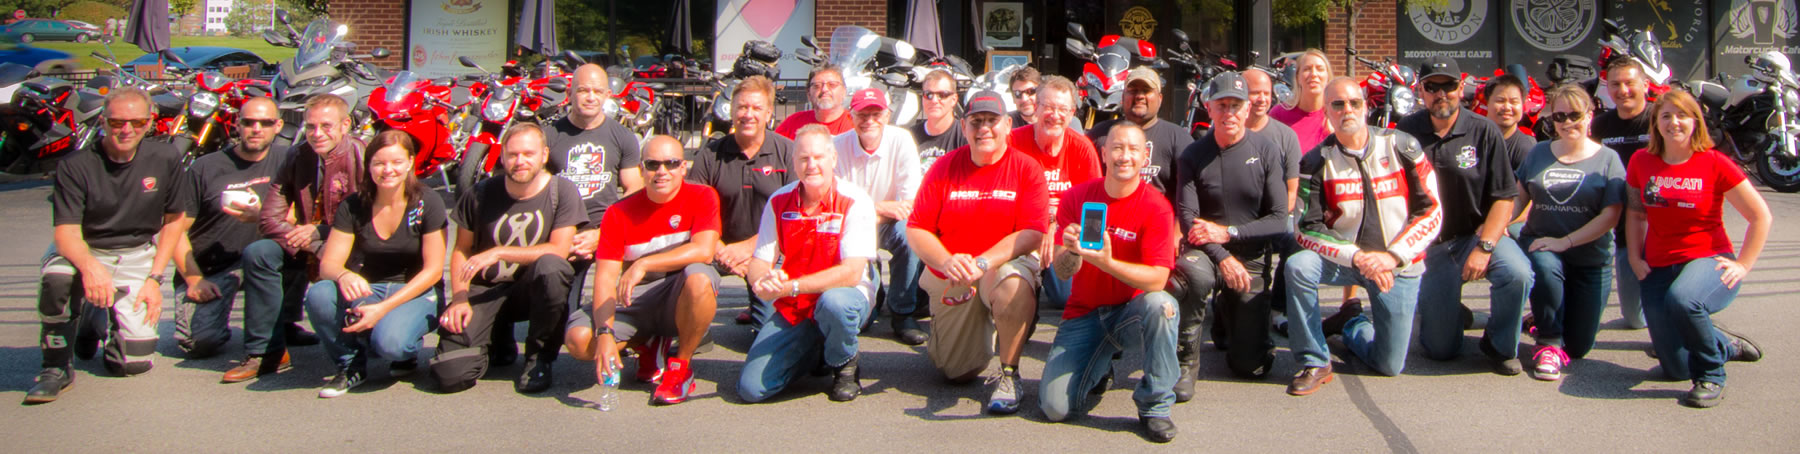 Indianapolis Ducati Club